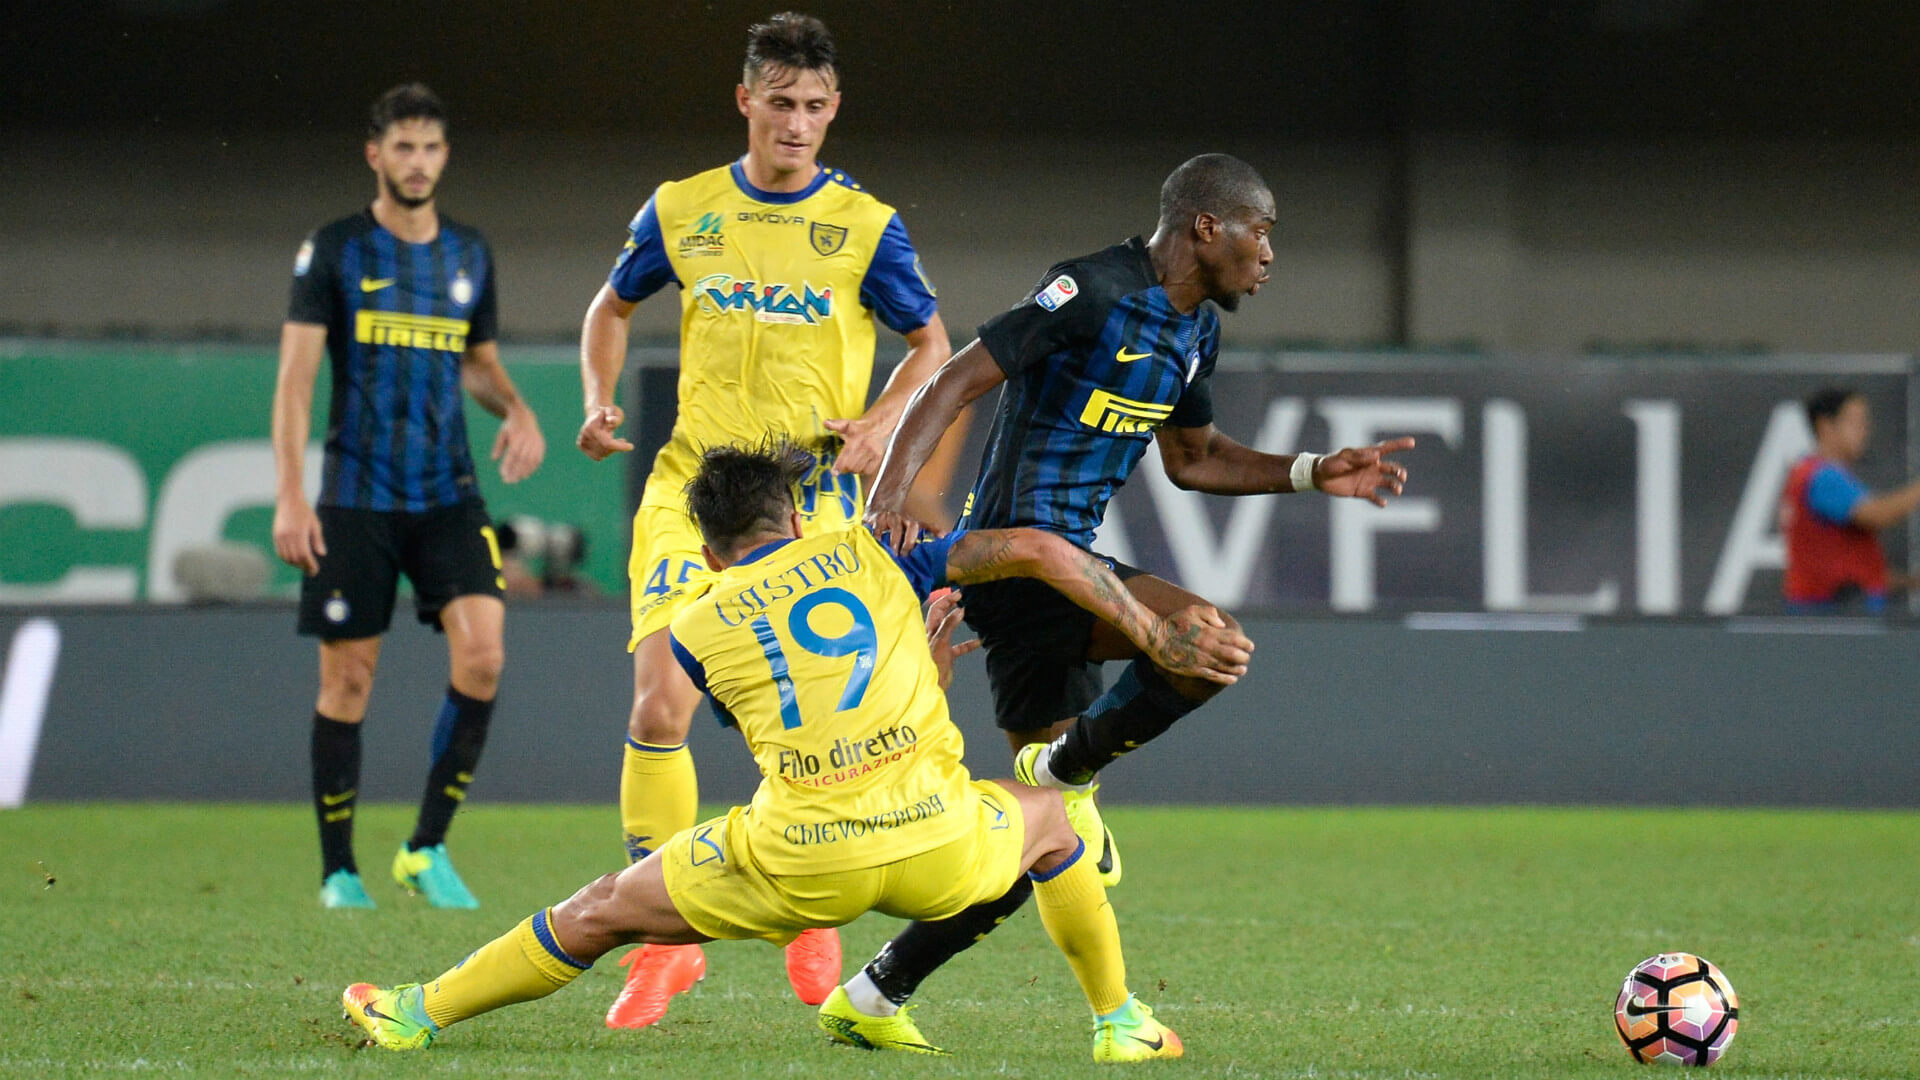 Nhận định Hellas Verona vs Inter Milan 24/12 - Bám đuổi ngôi đầu - Tyso.bet